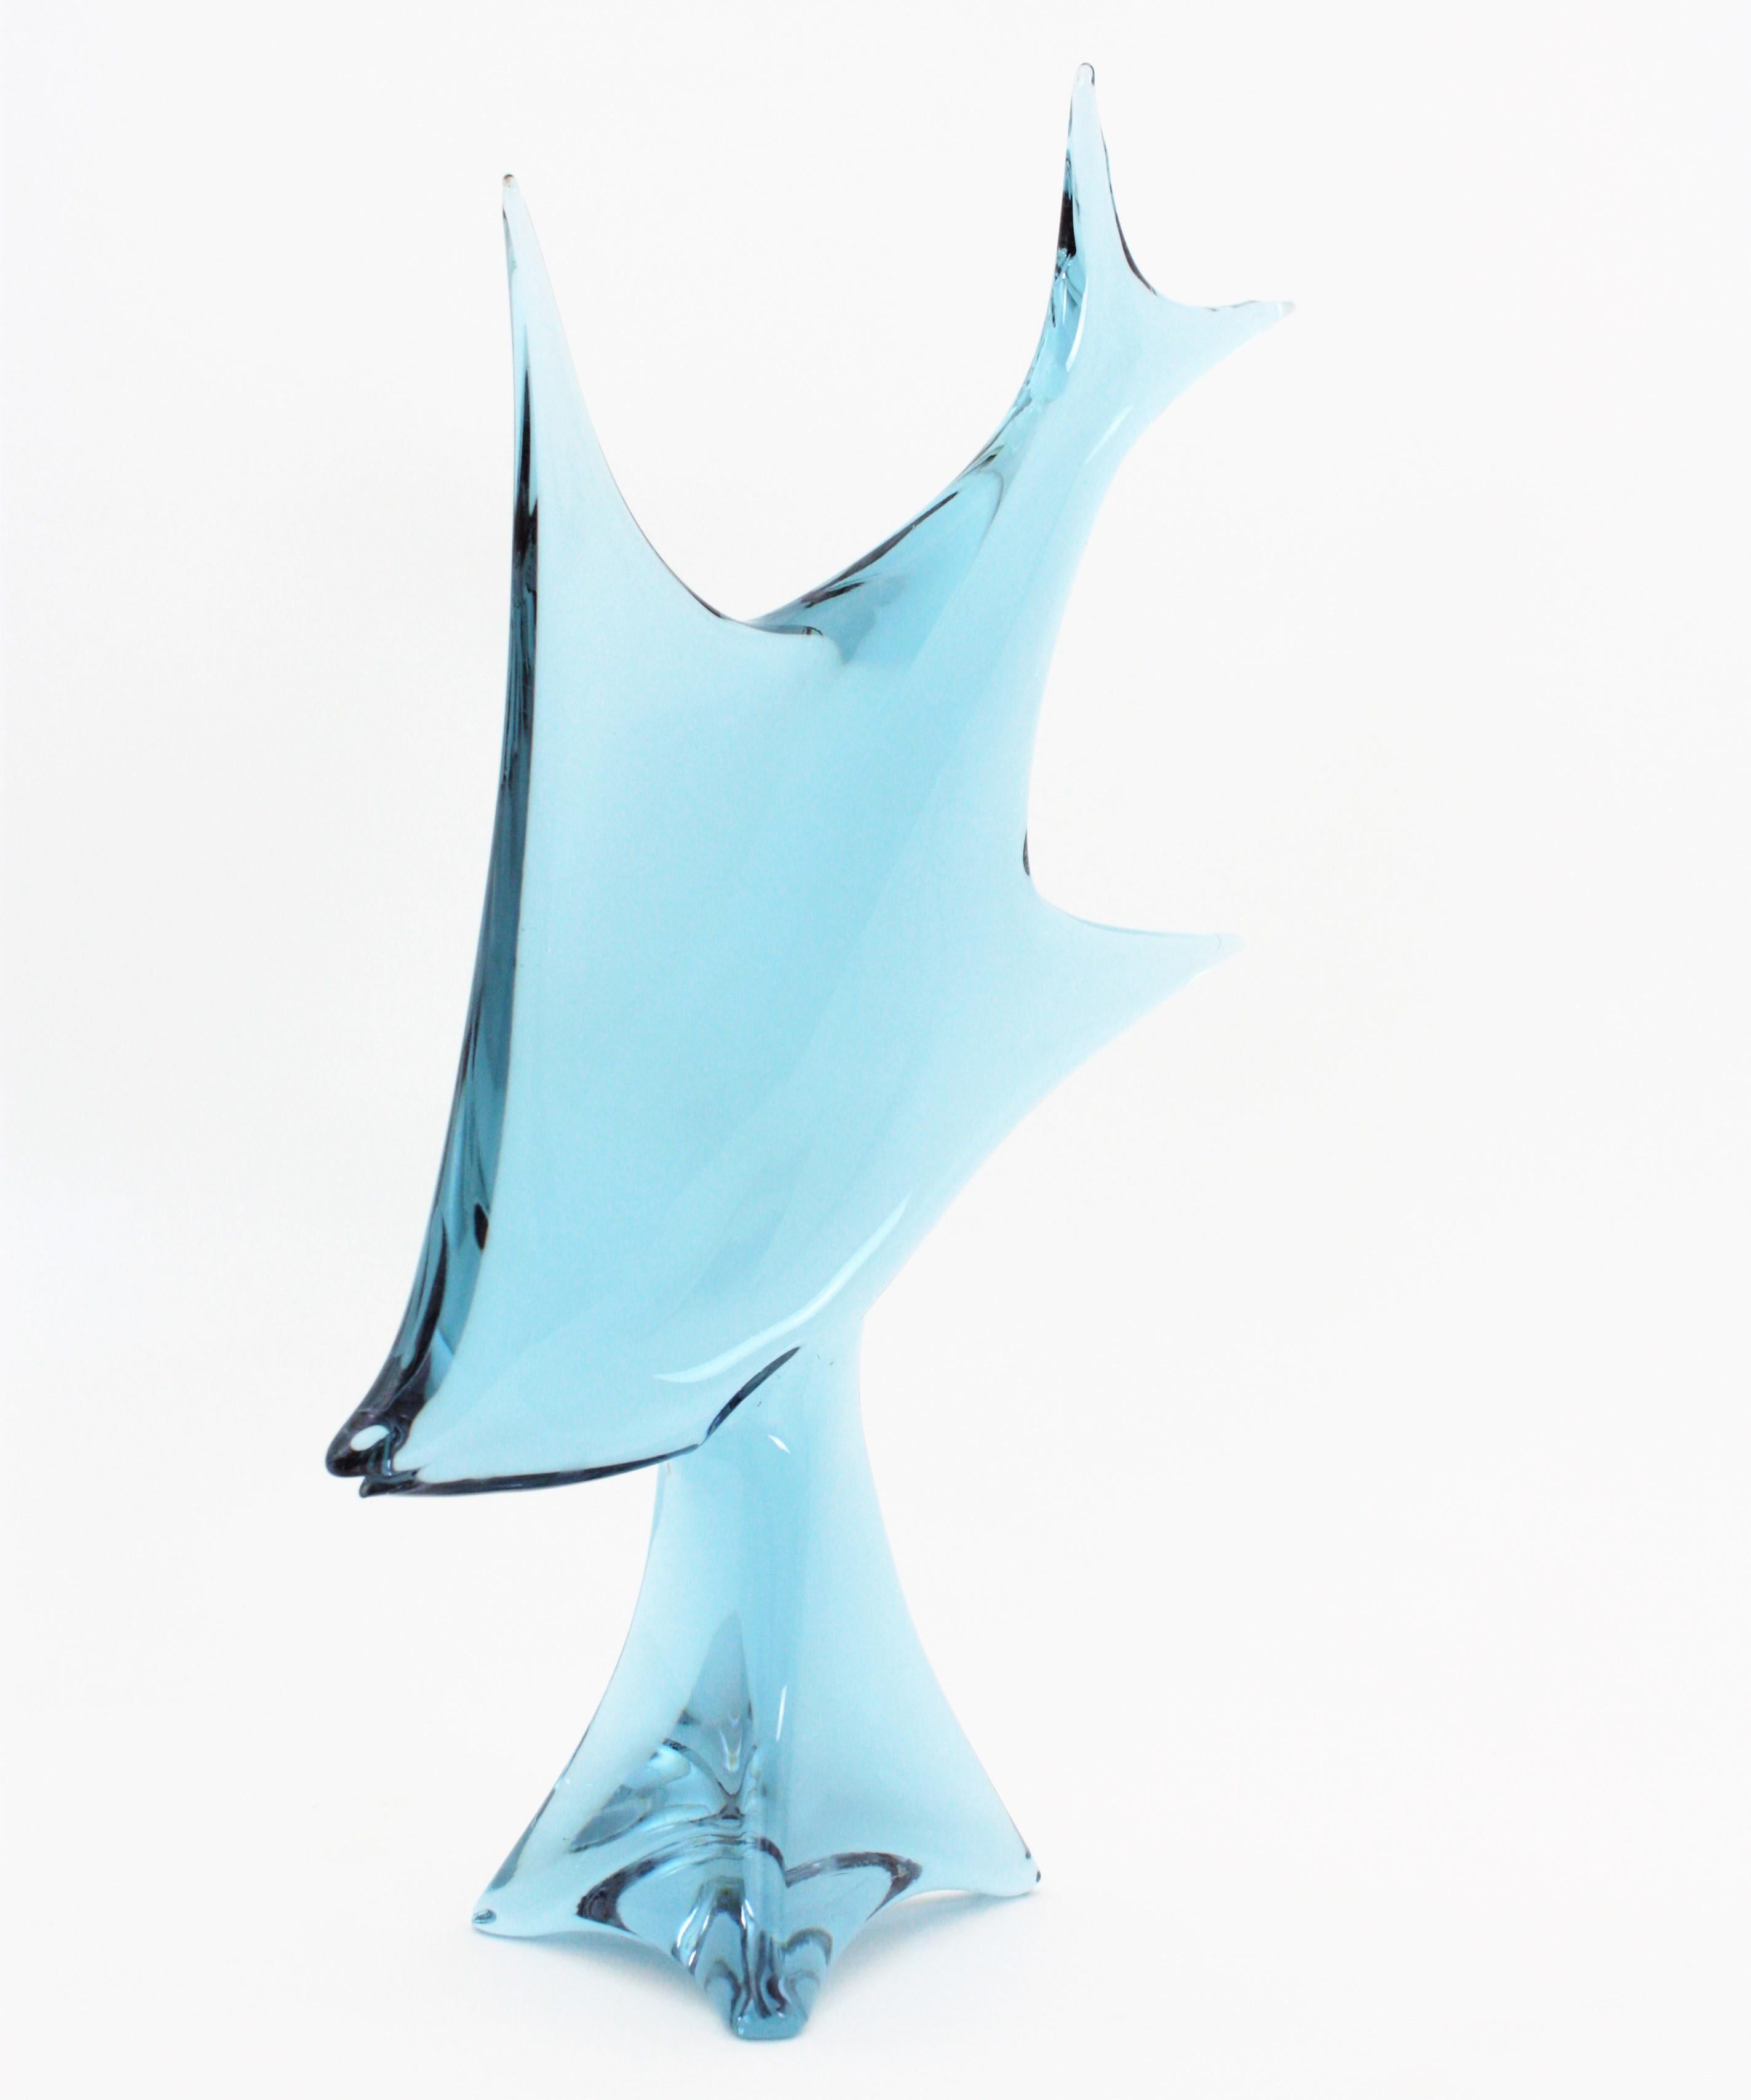 20th Century Murano Glass Fish Sculpture by Licio Zanetti, 1960s For Sale